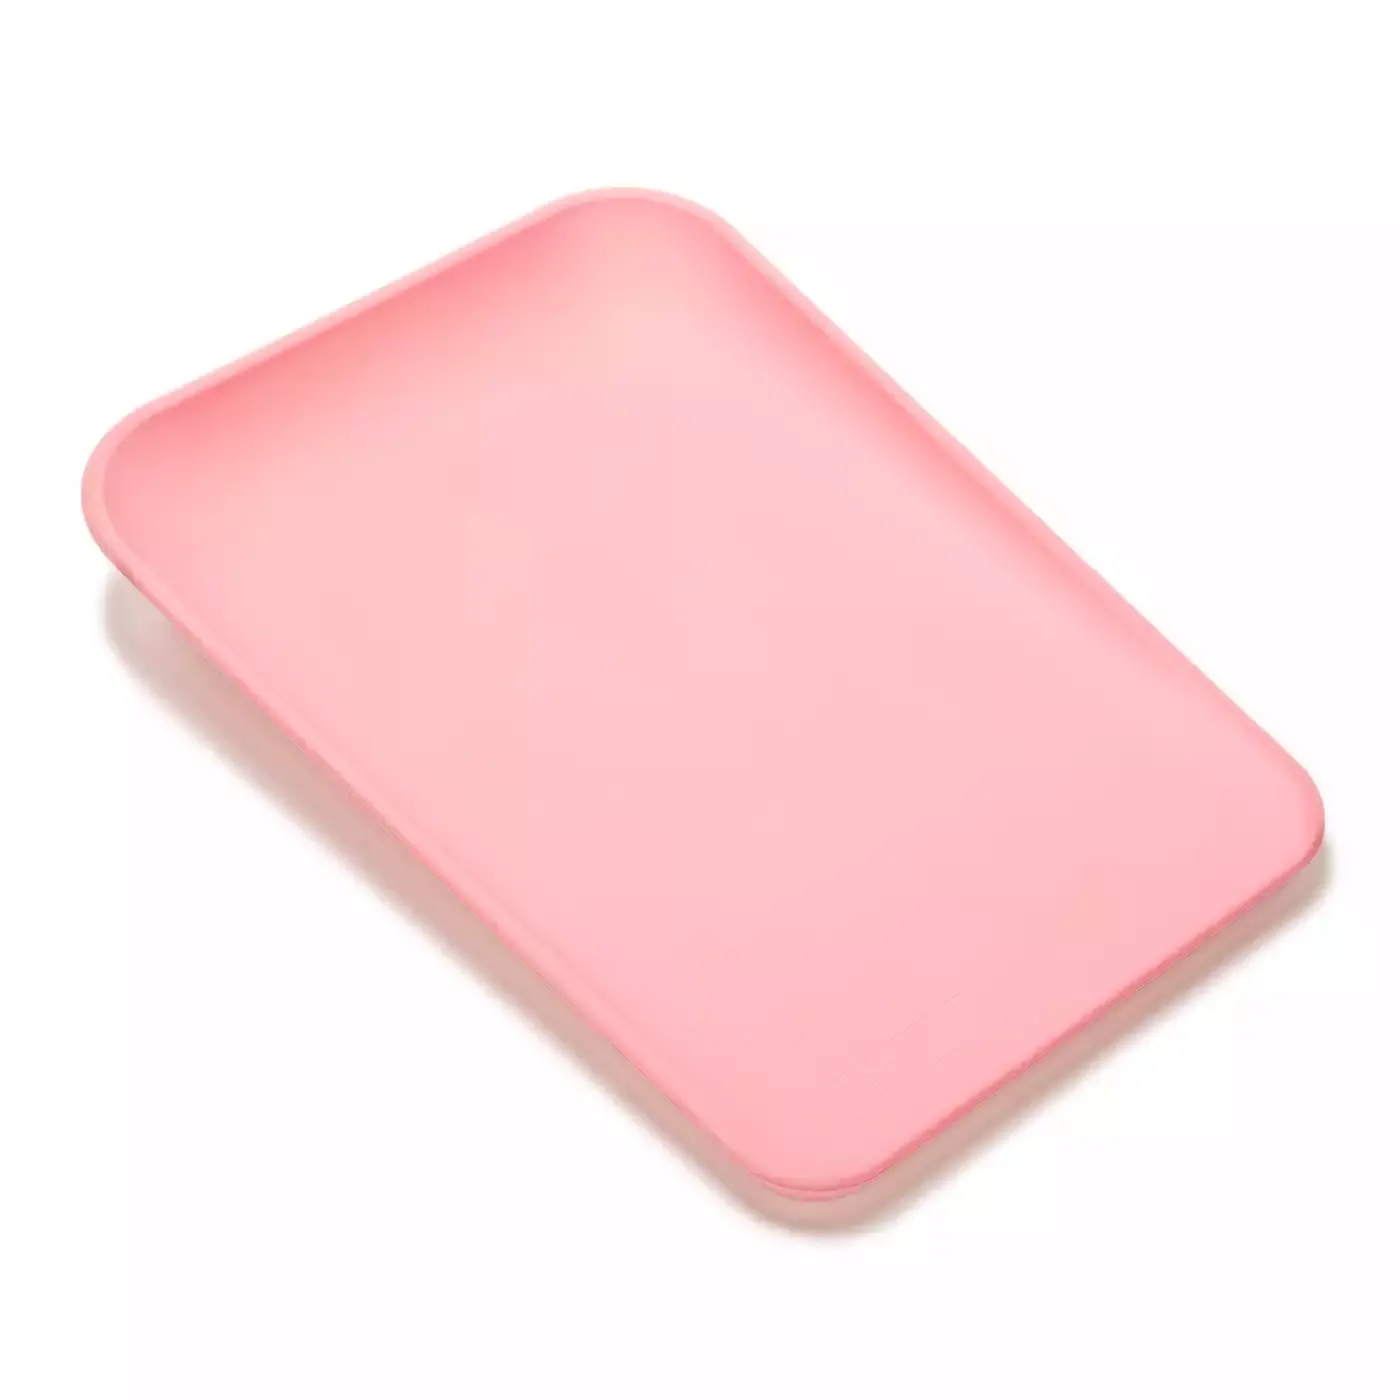 Matty™ Wickelauflage Soft Pink Leander Pink 2000574057606 1